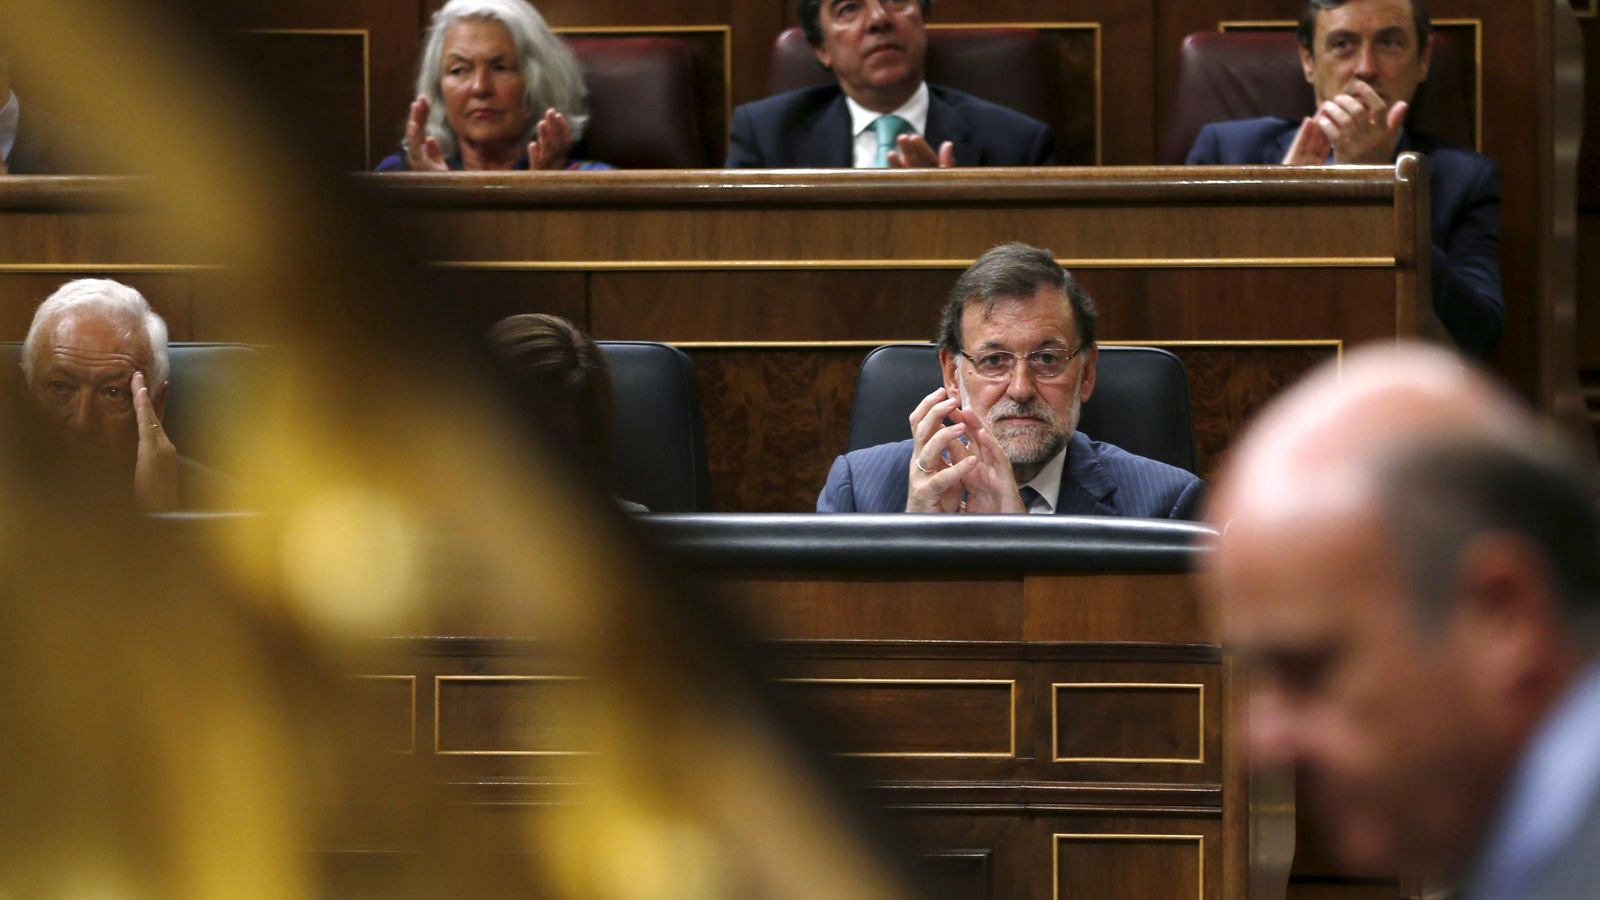 Foto: El presidente del Gobierno, Rajoy, al fondo mirando al ministro de Economía, Luis de Guindos. (Reuters)